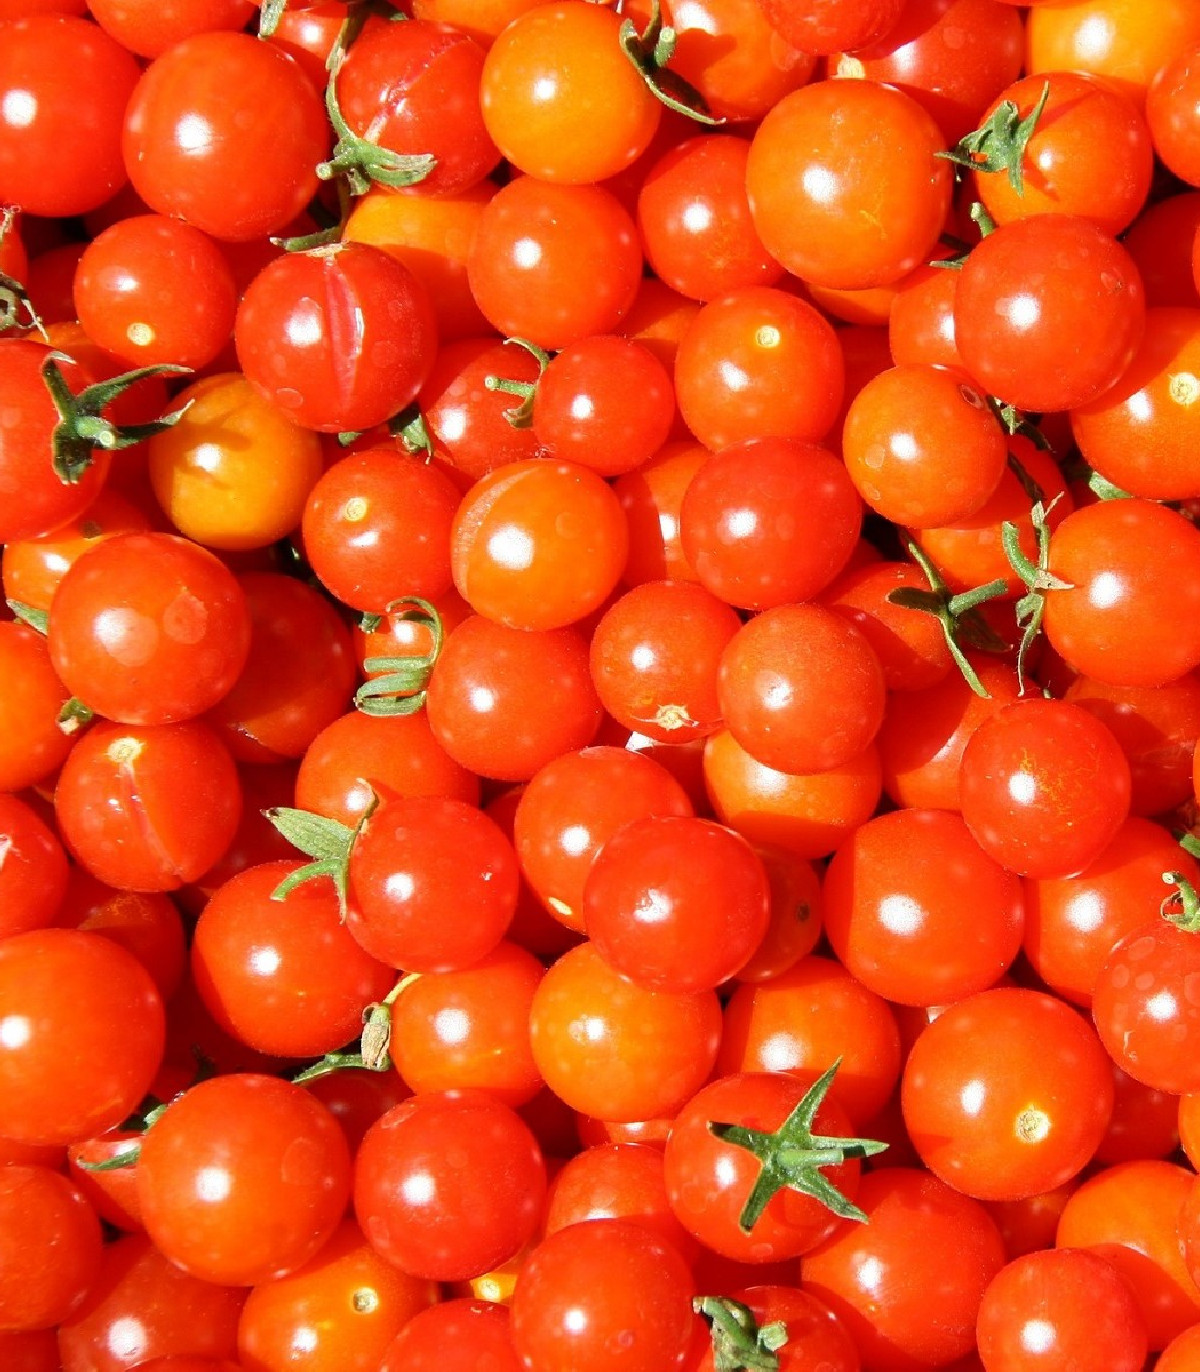 Rajče Gardeners Delight - Solanum lycopersicum - osivo rajčat - 10 ks